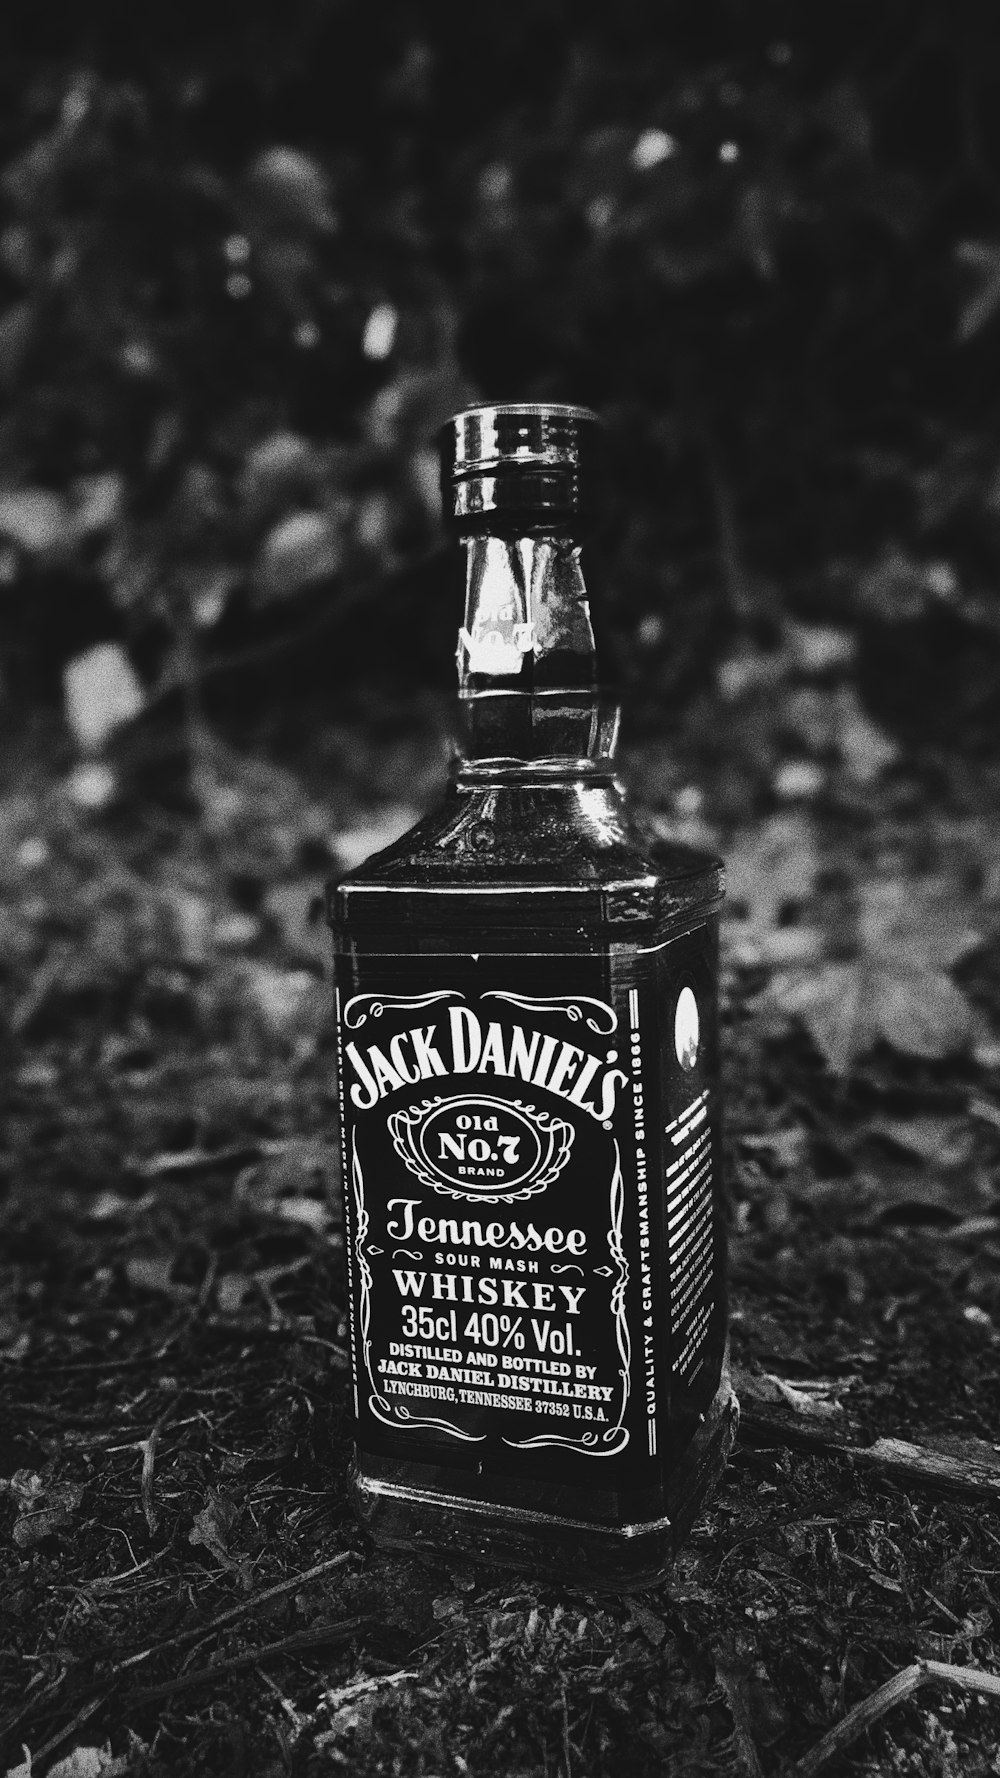 Jack Daniel'S Old No 7 Whiskey Photo – Free Alcohol Image On Unsplash